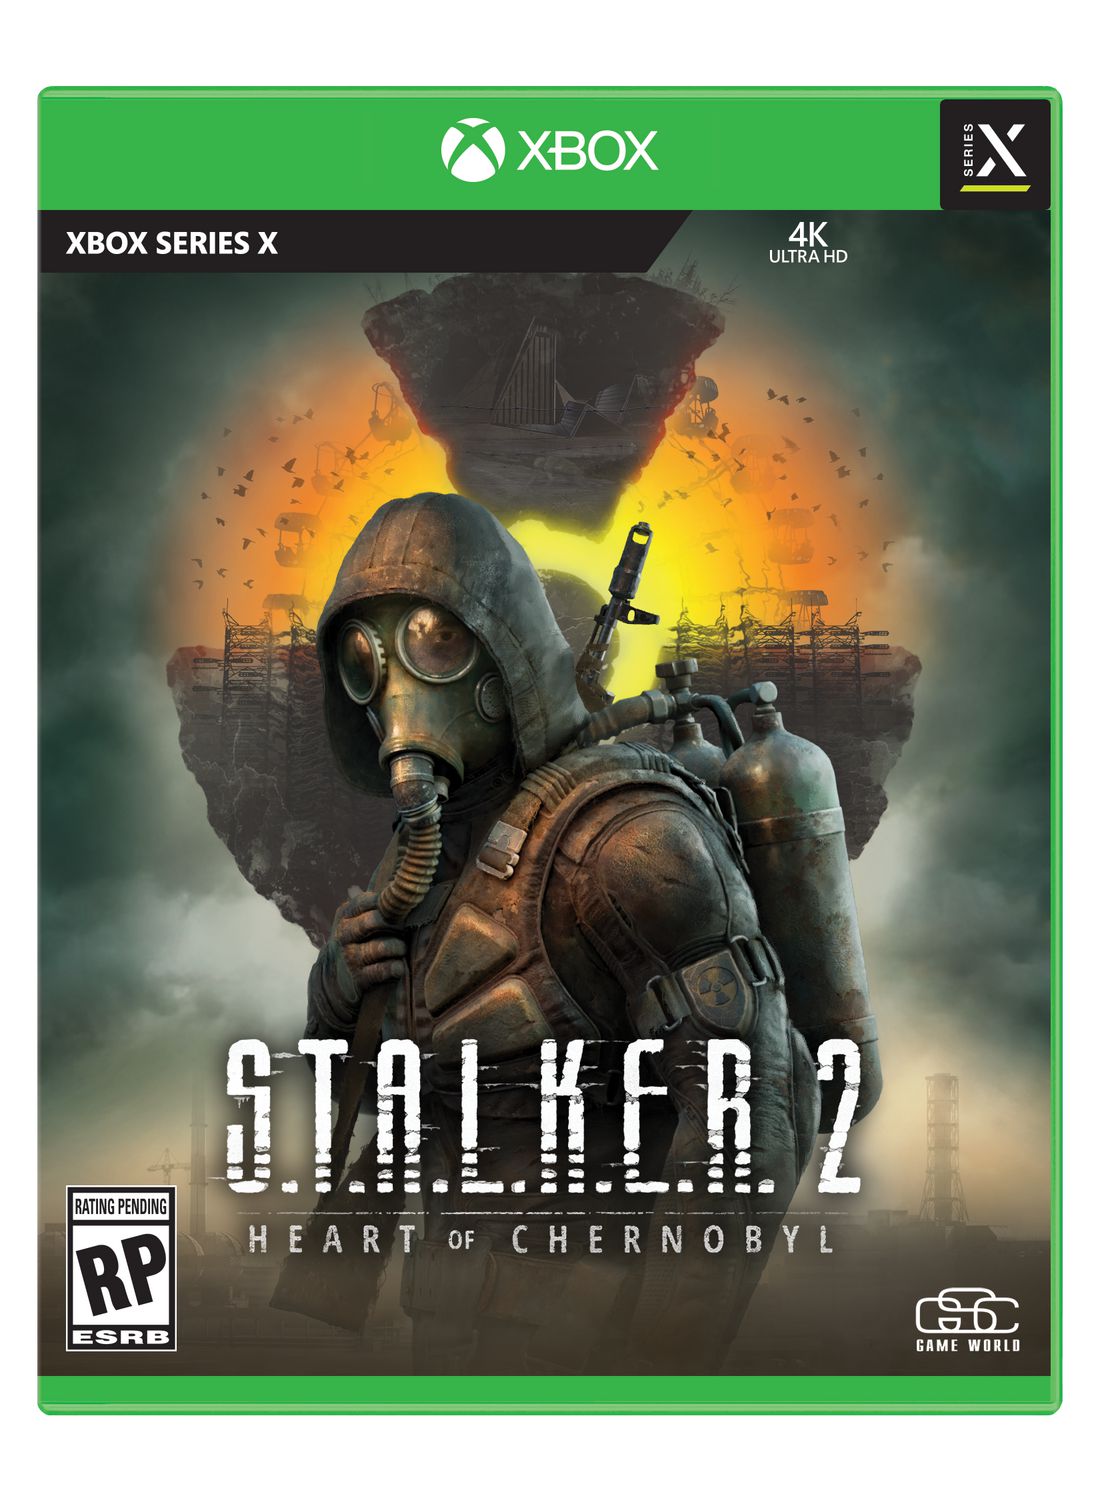 S.T.A.L.K.E.R. 2 returns to the Zone on Xbox Series X - CNET